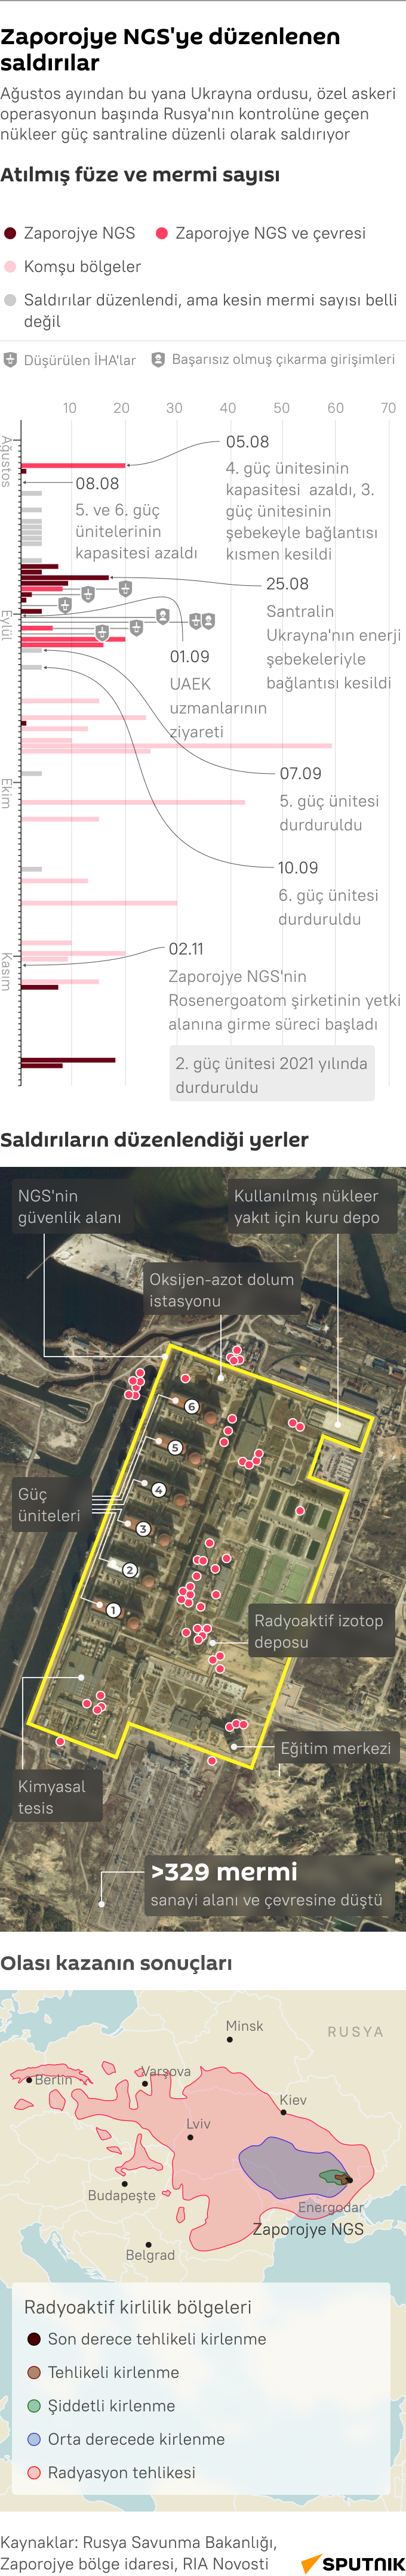 İnfografik Zaporojye NGS'ye düzenlenen saldırılar - Sputnik Türkiye